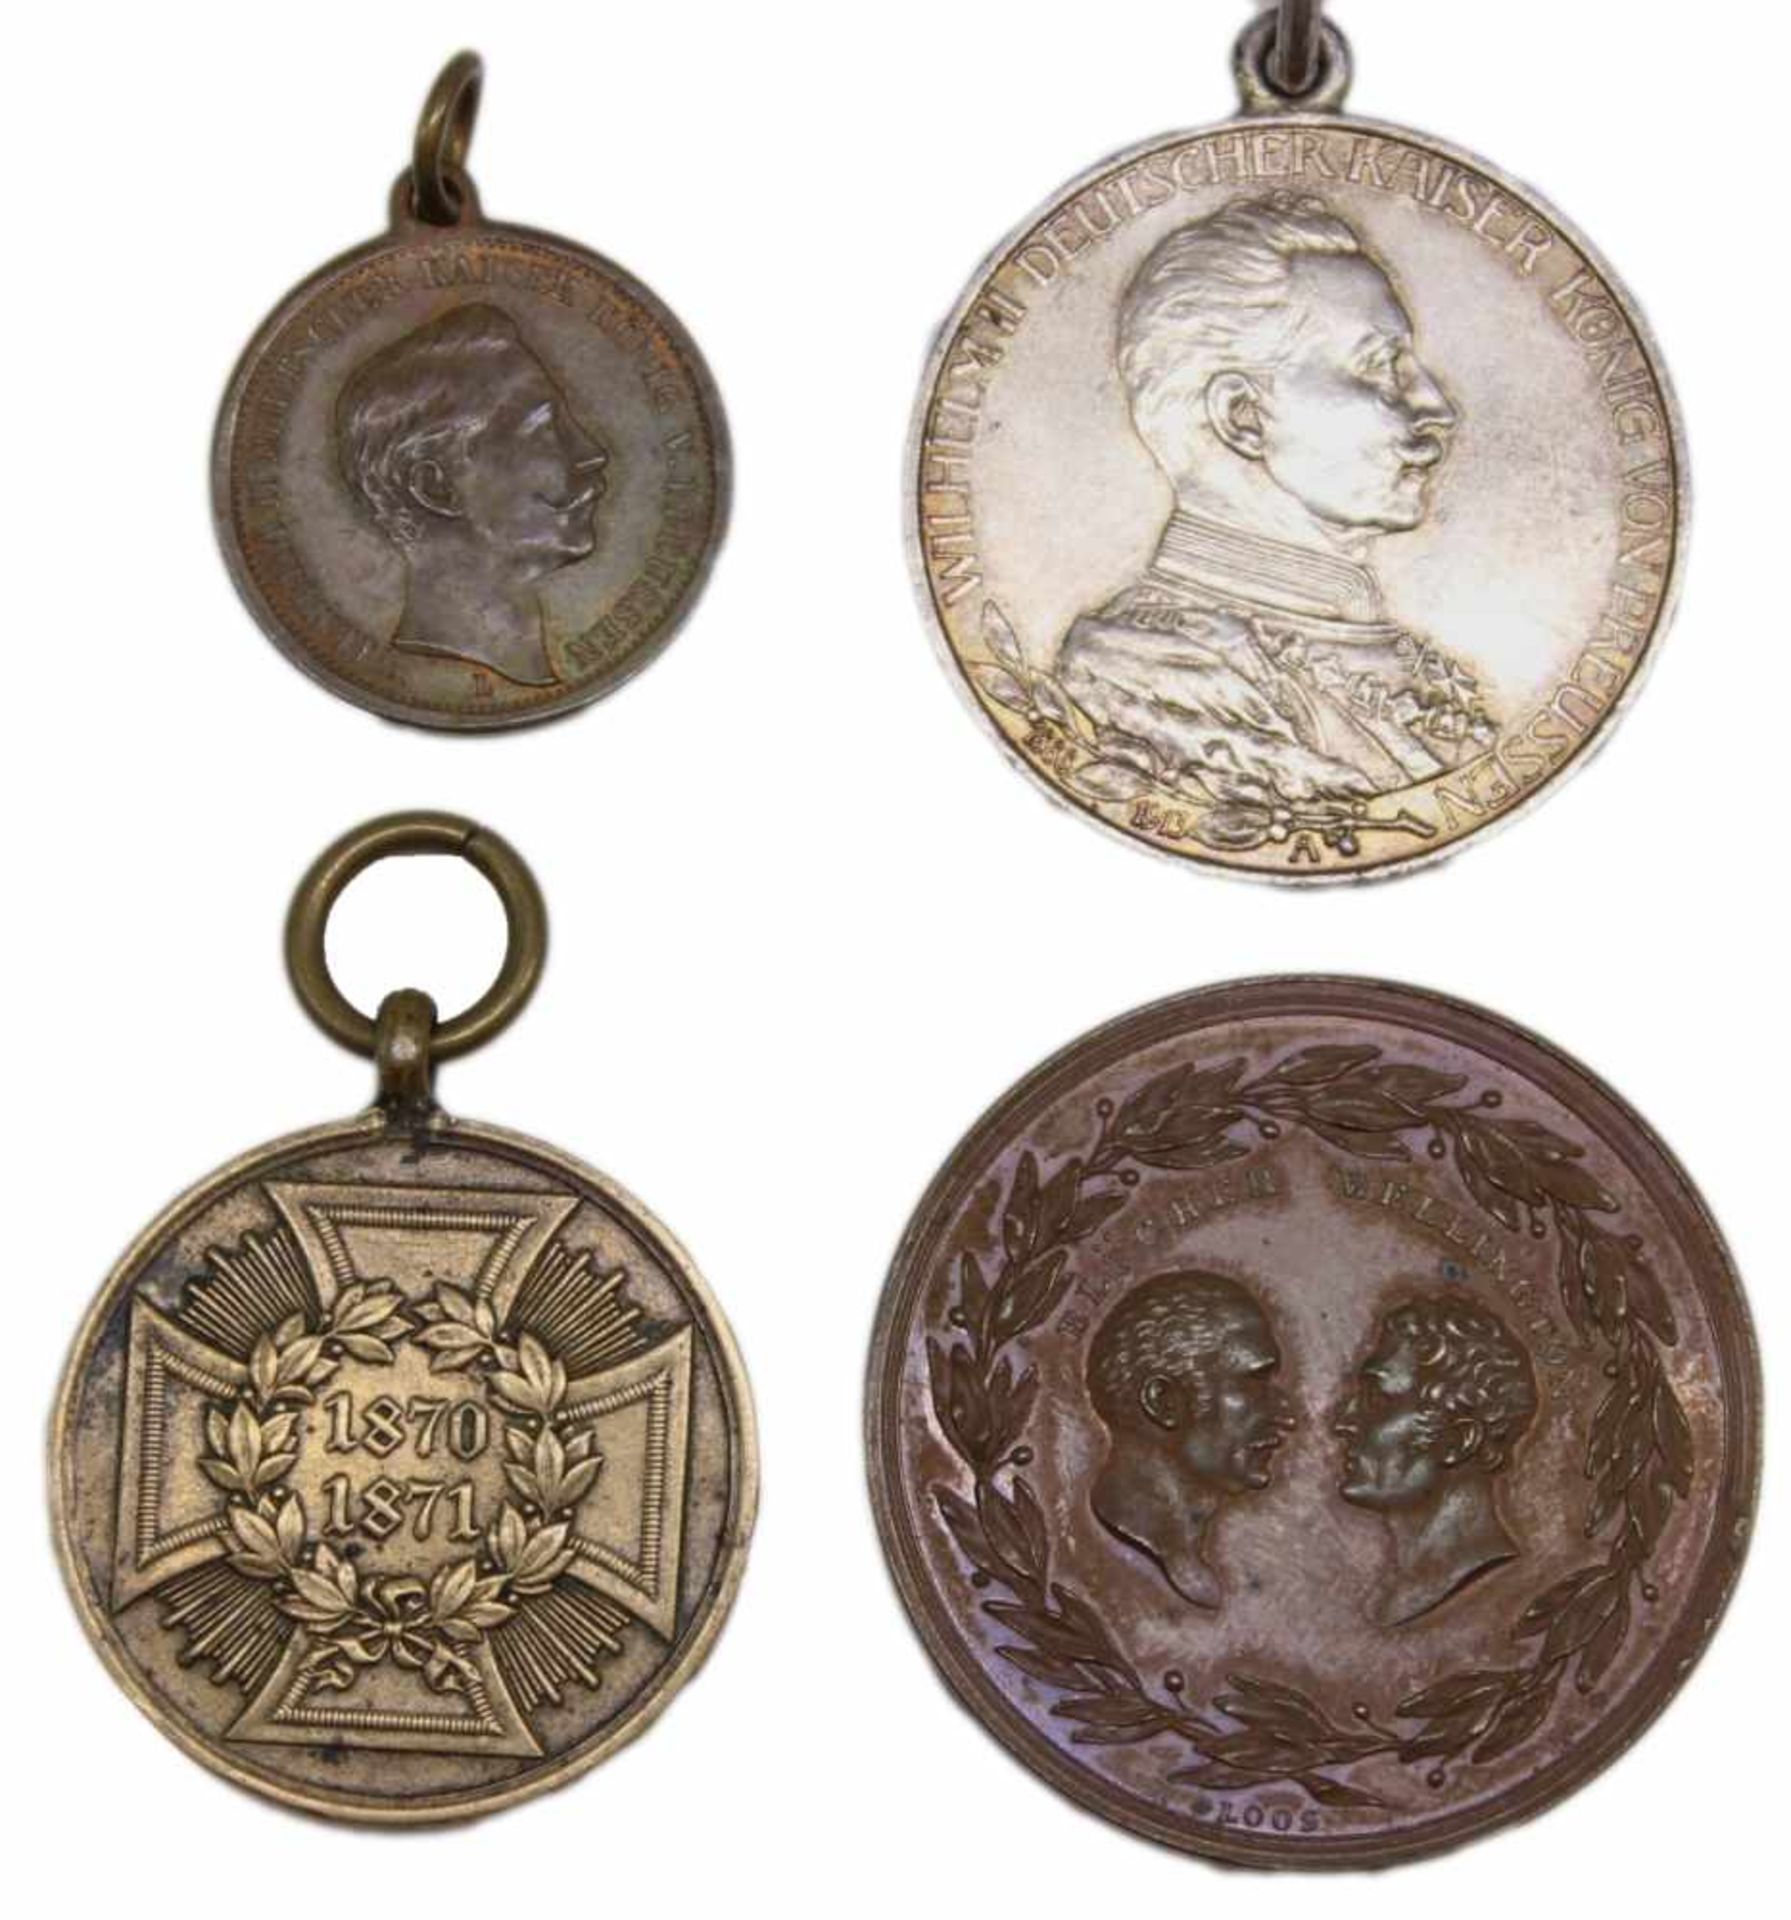 Lot Medaillen 1.Medaille 1815, Bronze, Vorderseite: Blücher und Wellington, Rückseite: "Der